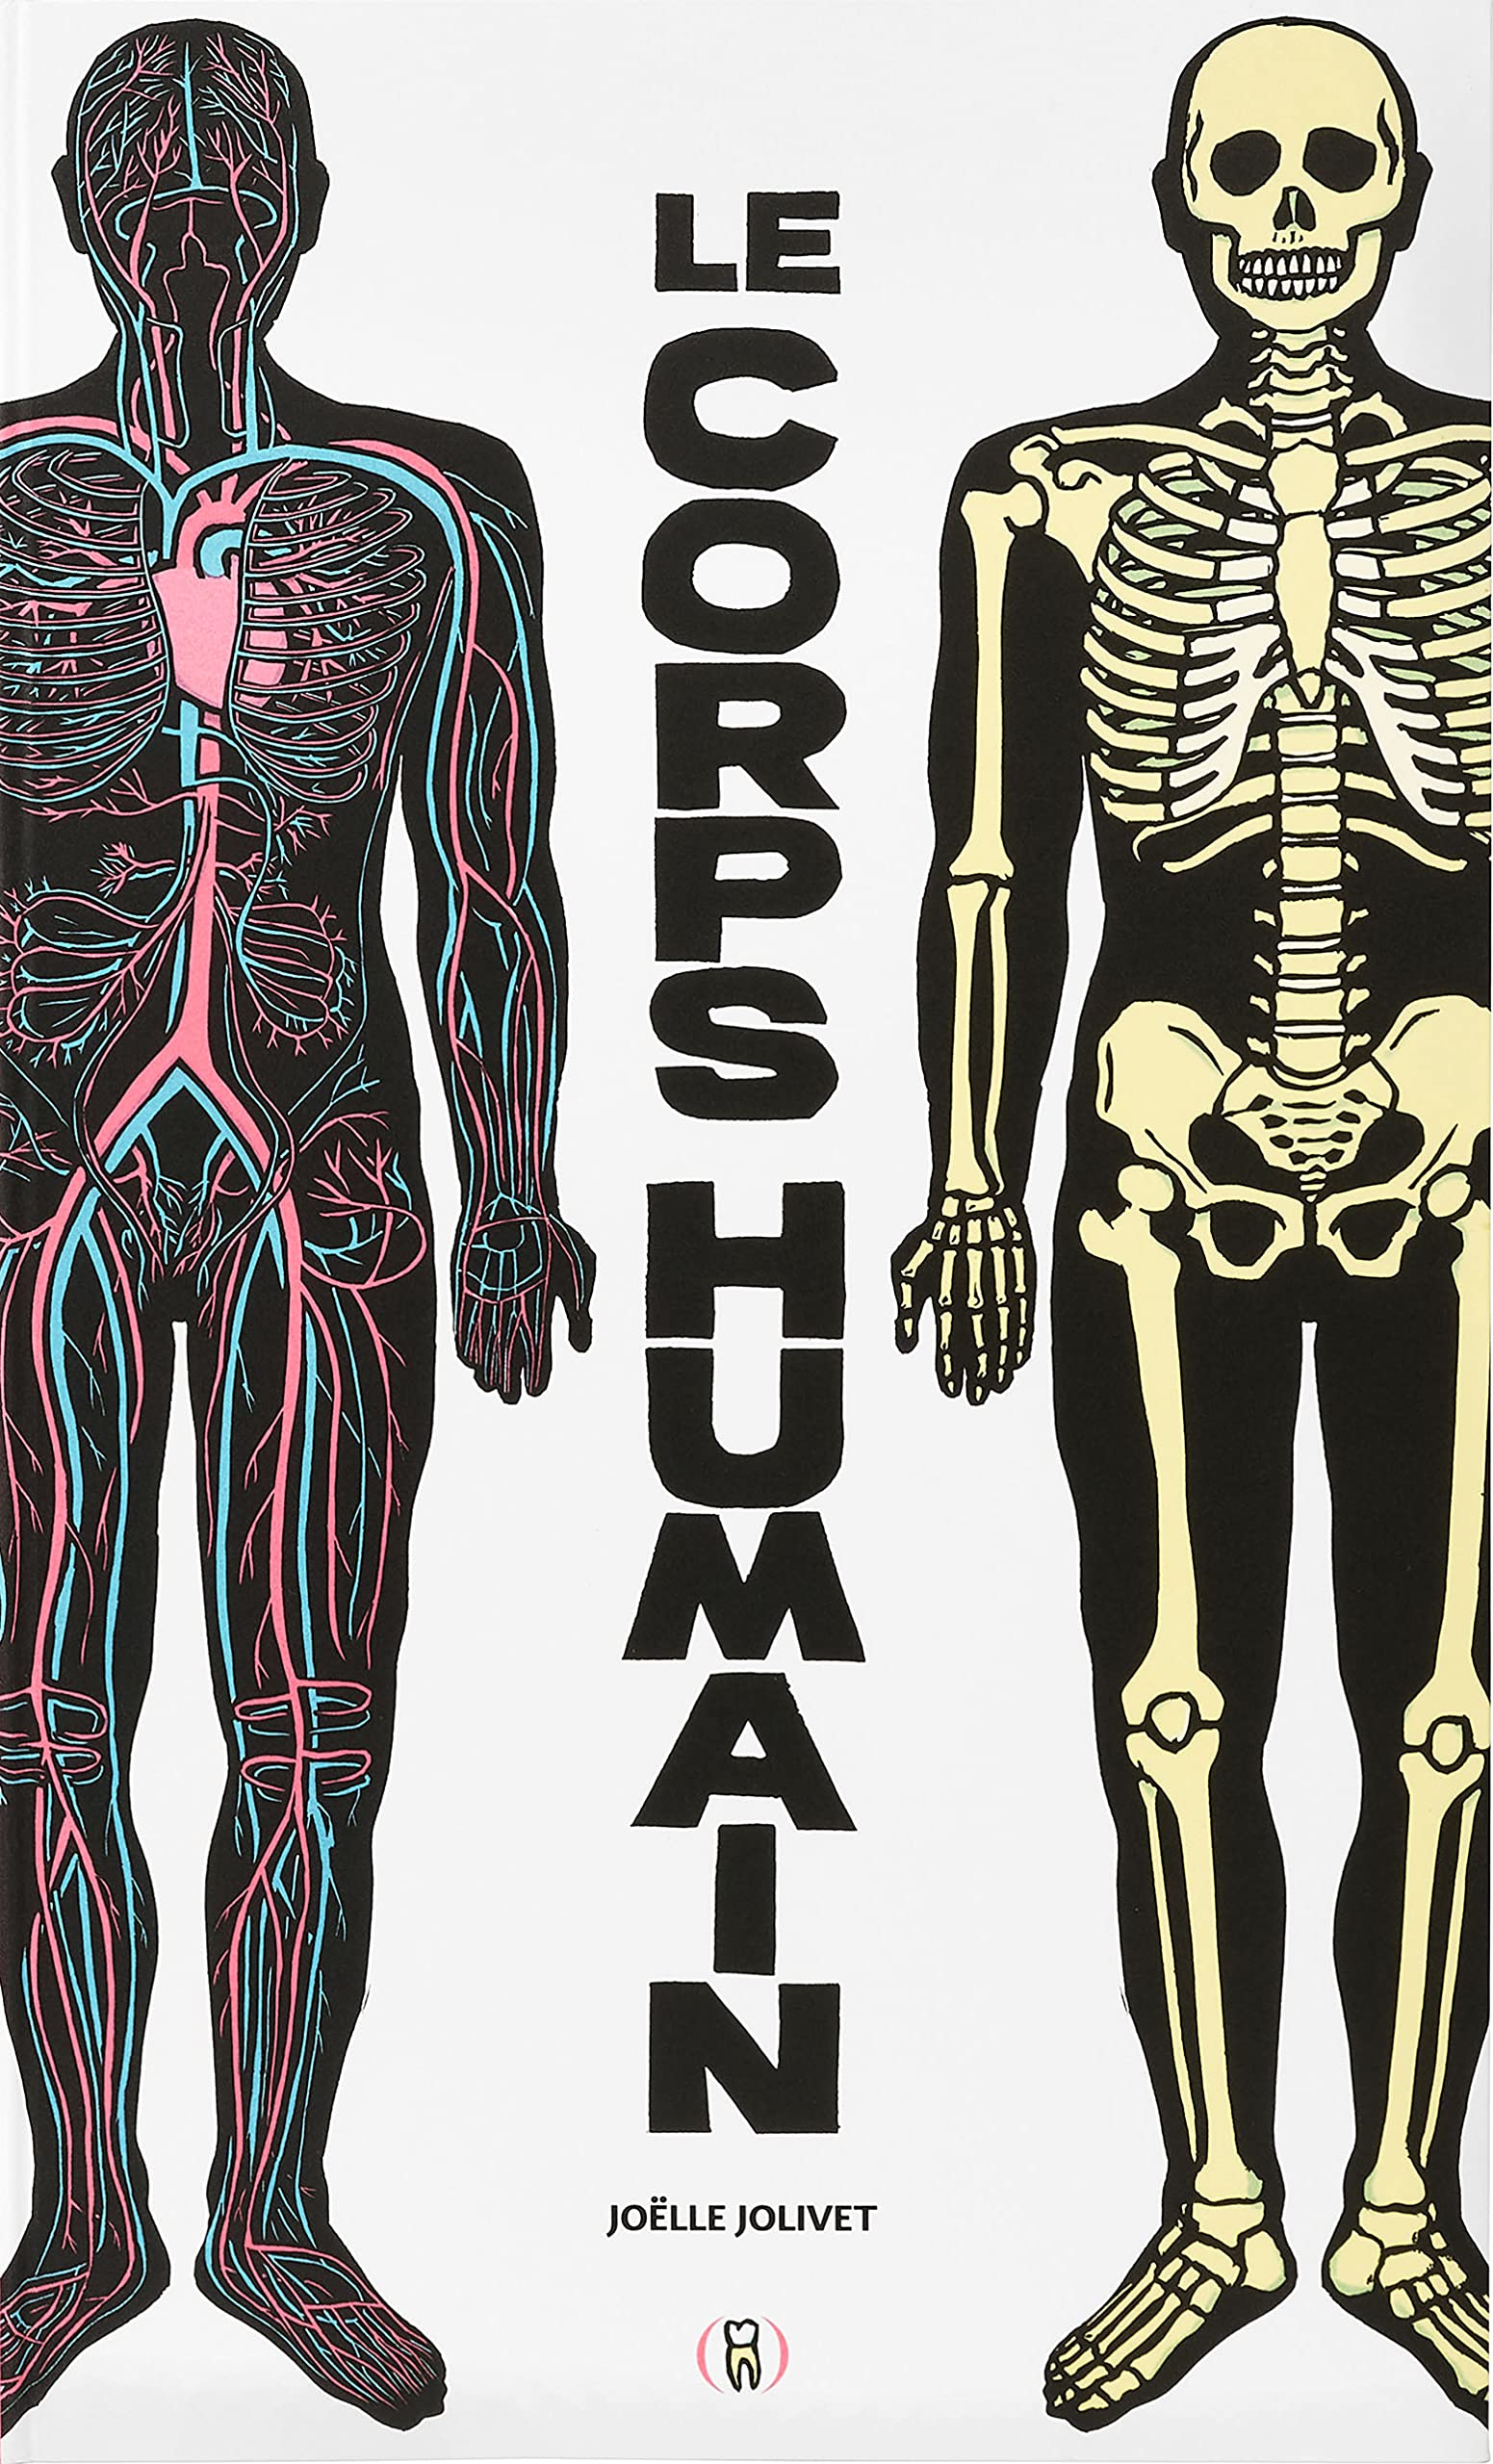 Mon livre de faits étonnants sur le corps humain